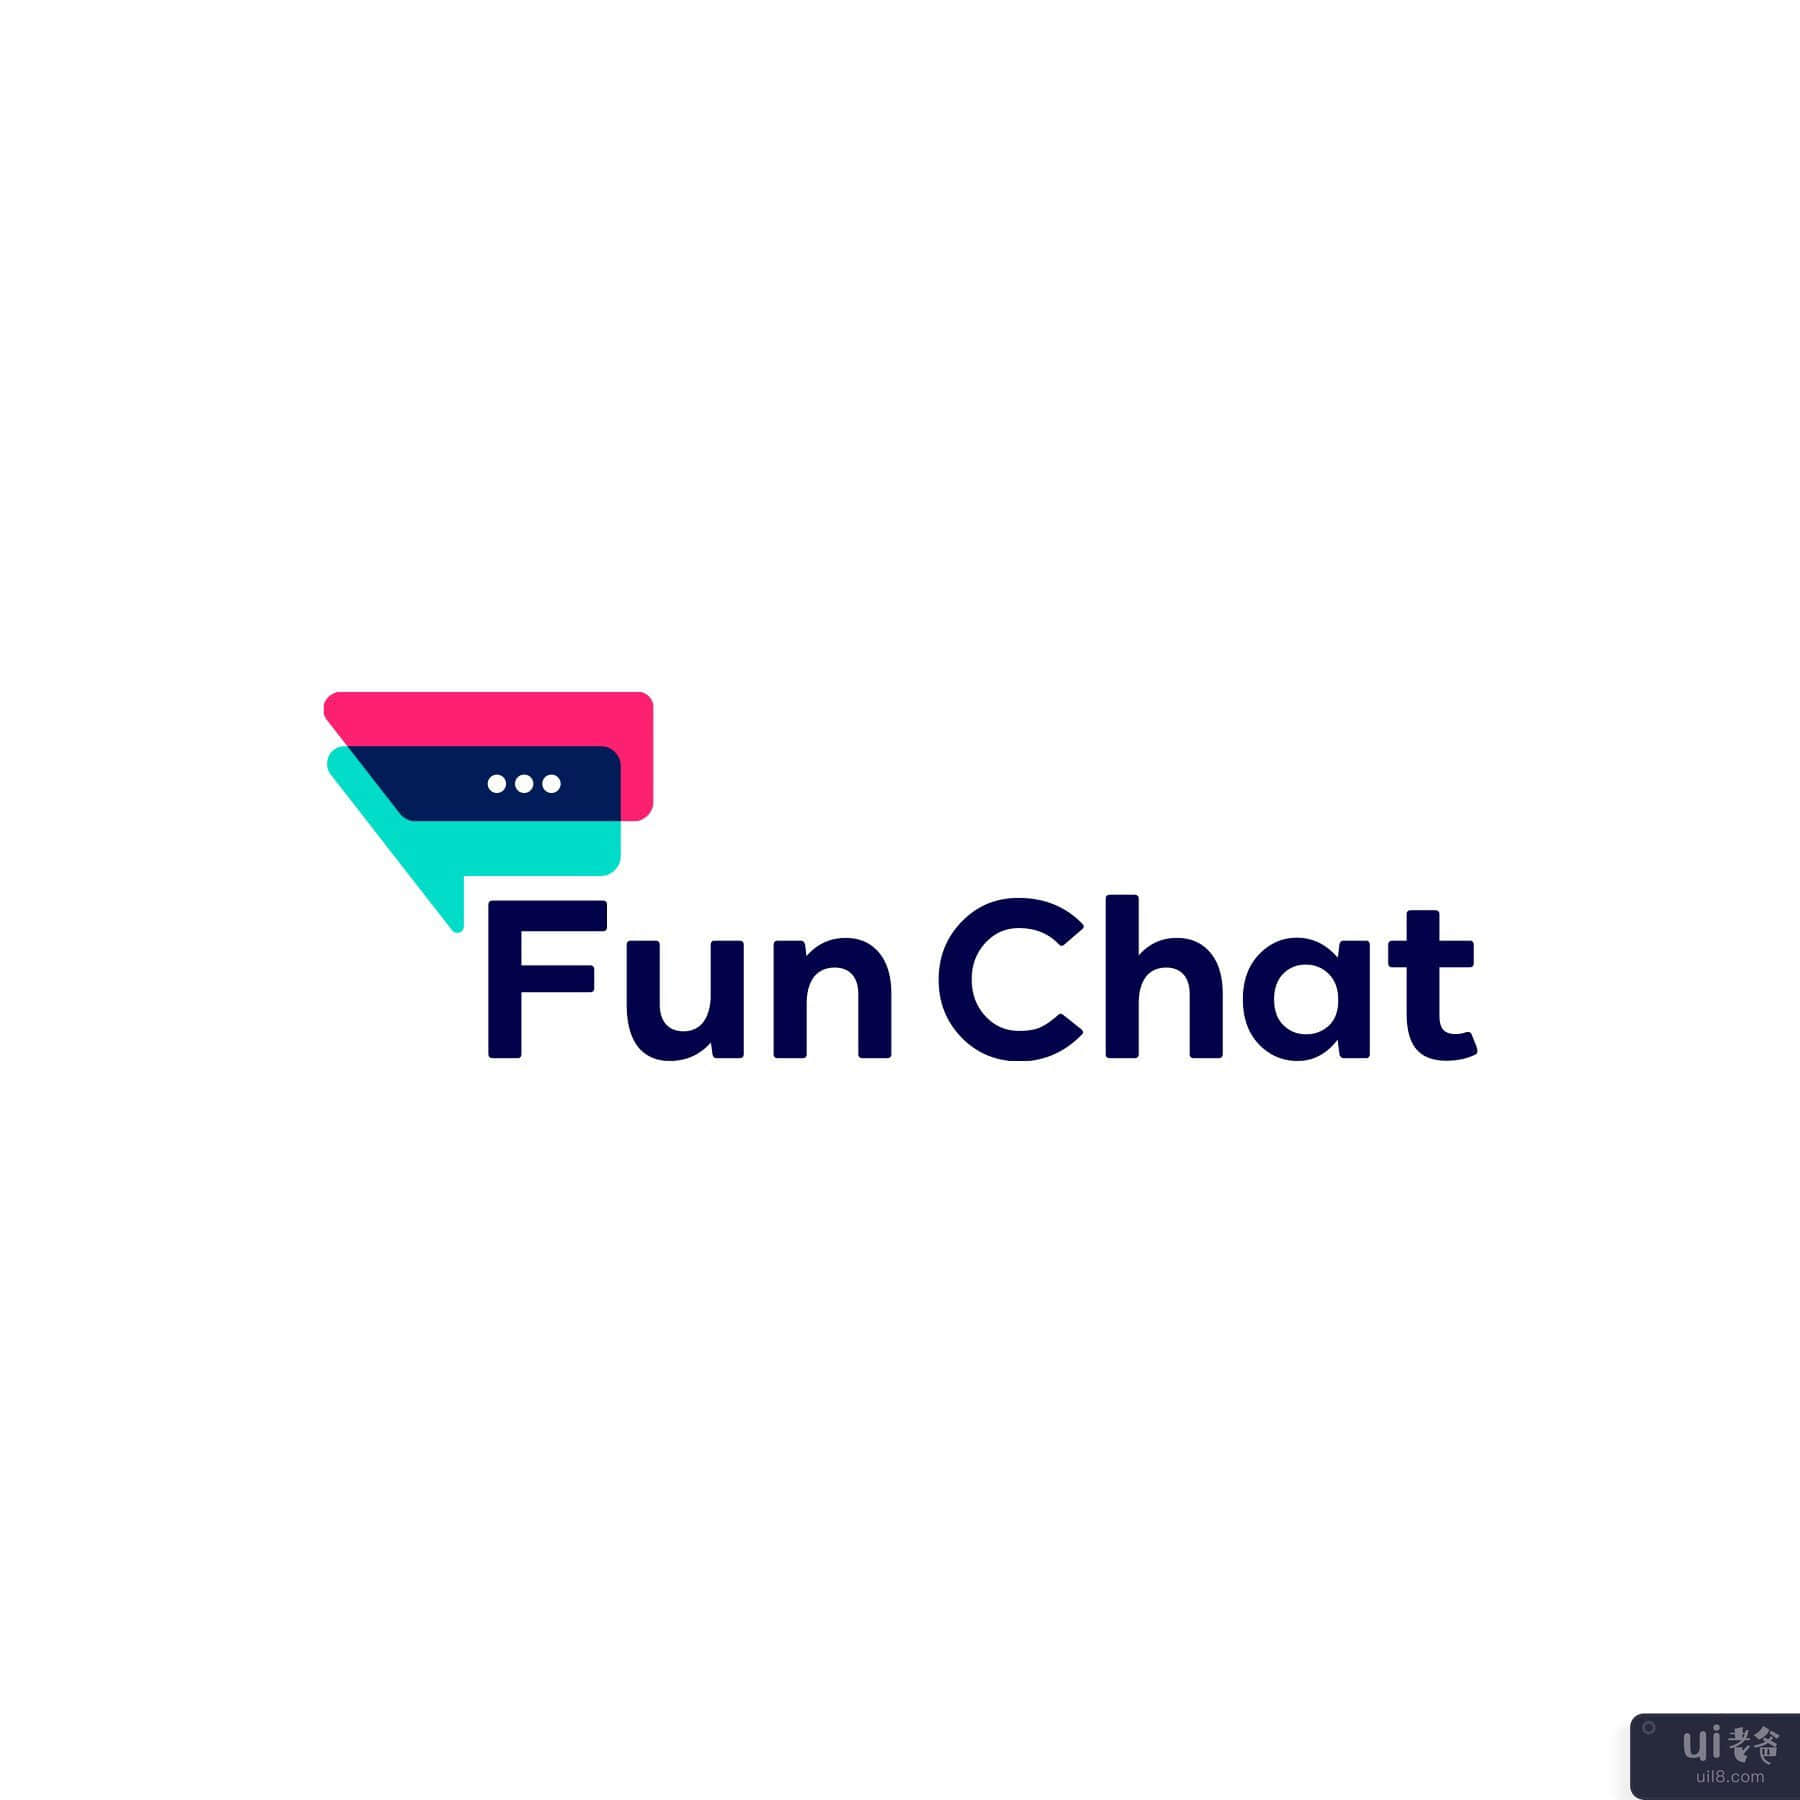 有趣的聊天标志设计模板(Fun Chat Logo Design Templates)插图